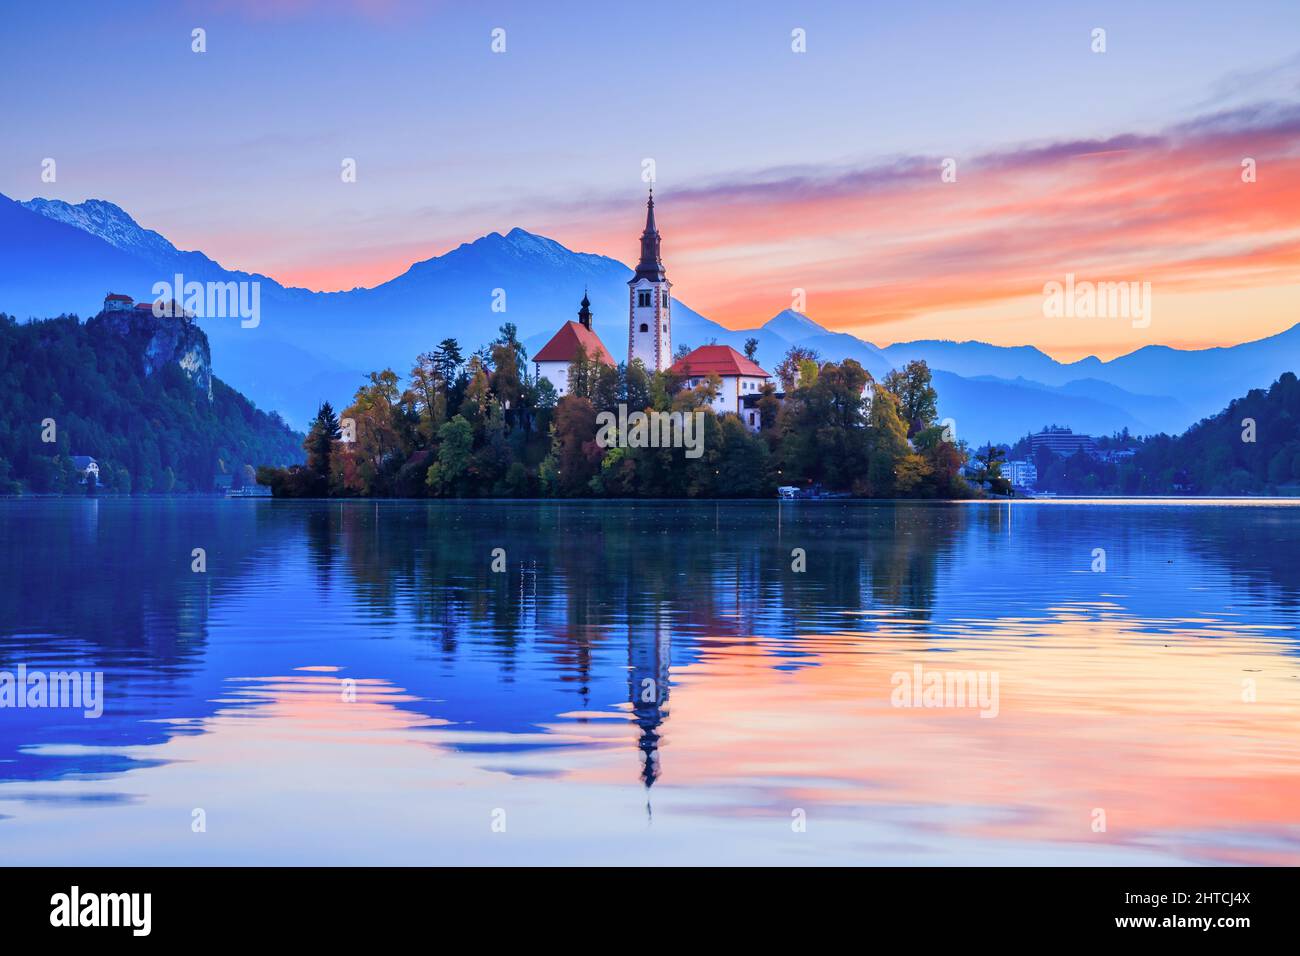 Bleder See, Slowenien. Sonnenaufgang am Bleder See mit der berühmten Insel Bled und dem historischen Schloss Bled im Hintergrund. Stockfoto